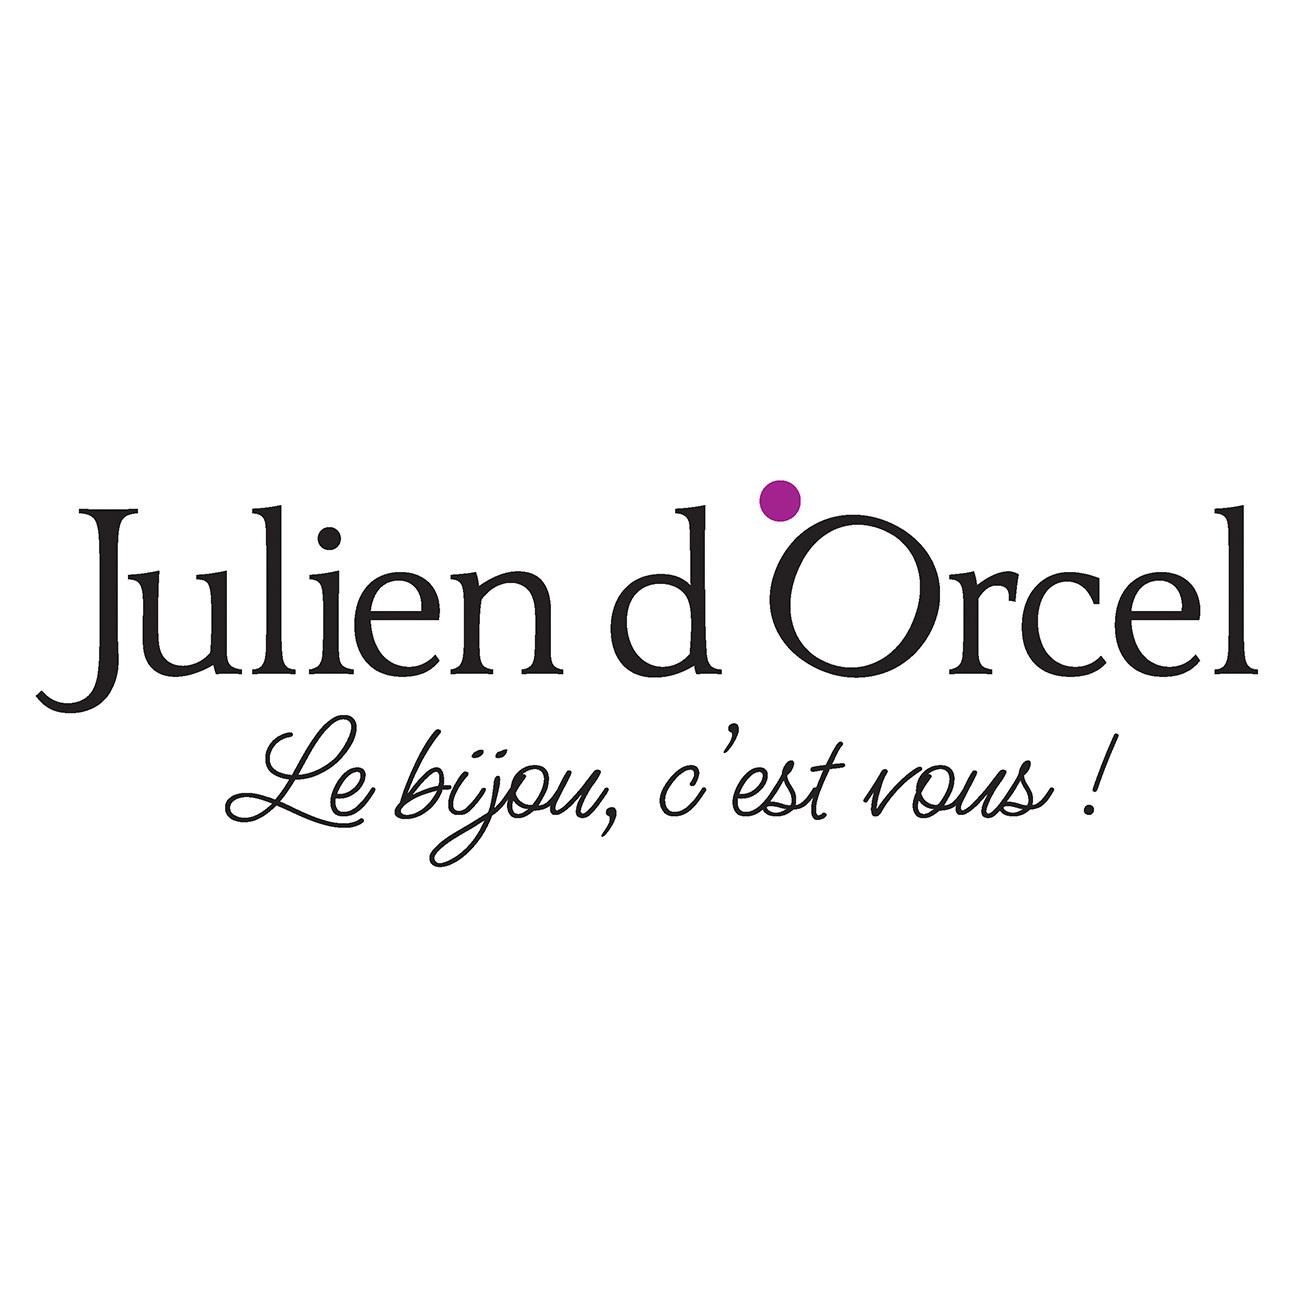 Julien D'orcel Quimperle Quimperlé